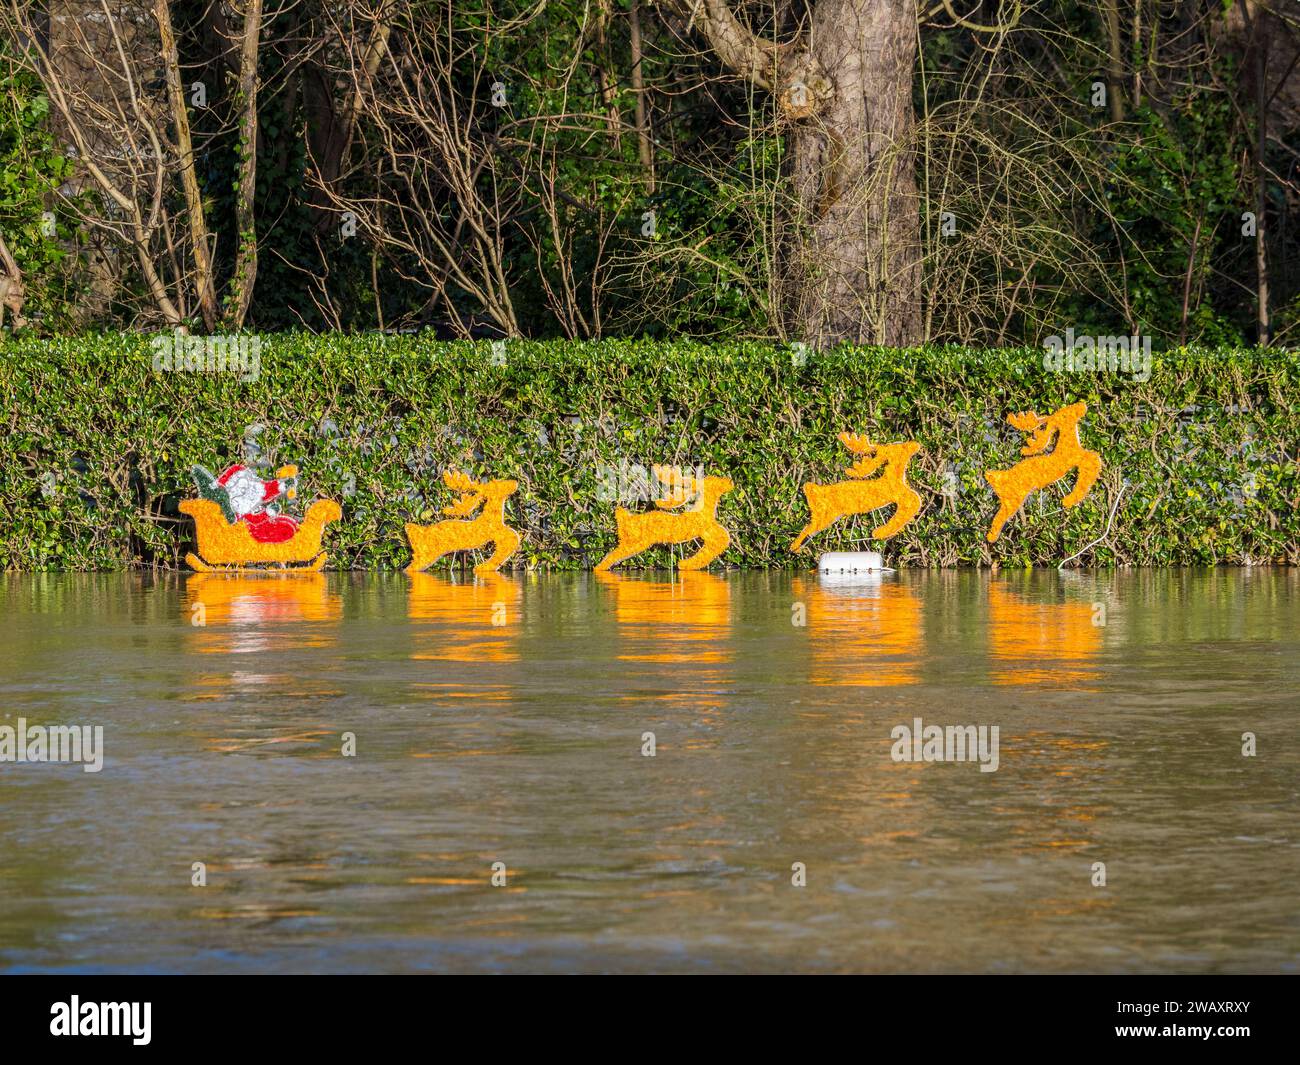 Decorazioni natalizie e innalzamento delle acque alluvionali, Fry's Island, fiume Tamigi, Reading, Berkshire, Inghilterra, Regno Unito, Regno Unito. Foto Stock